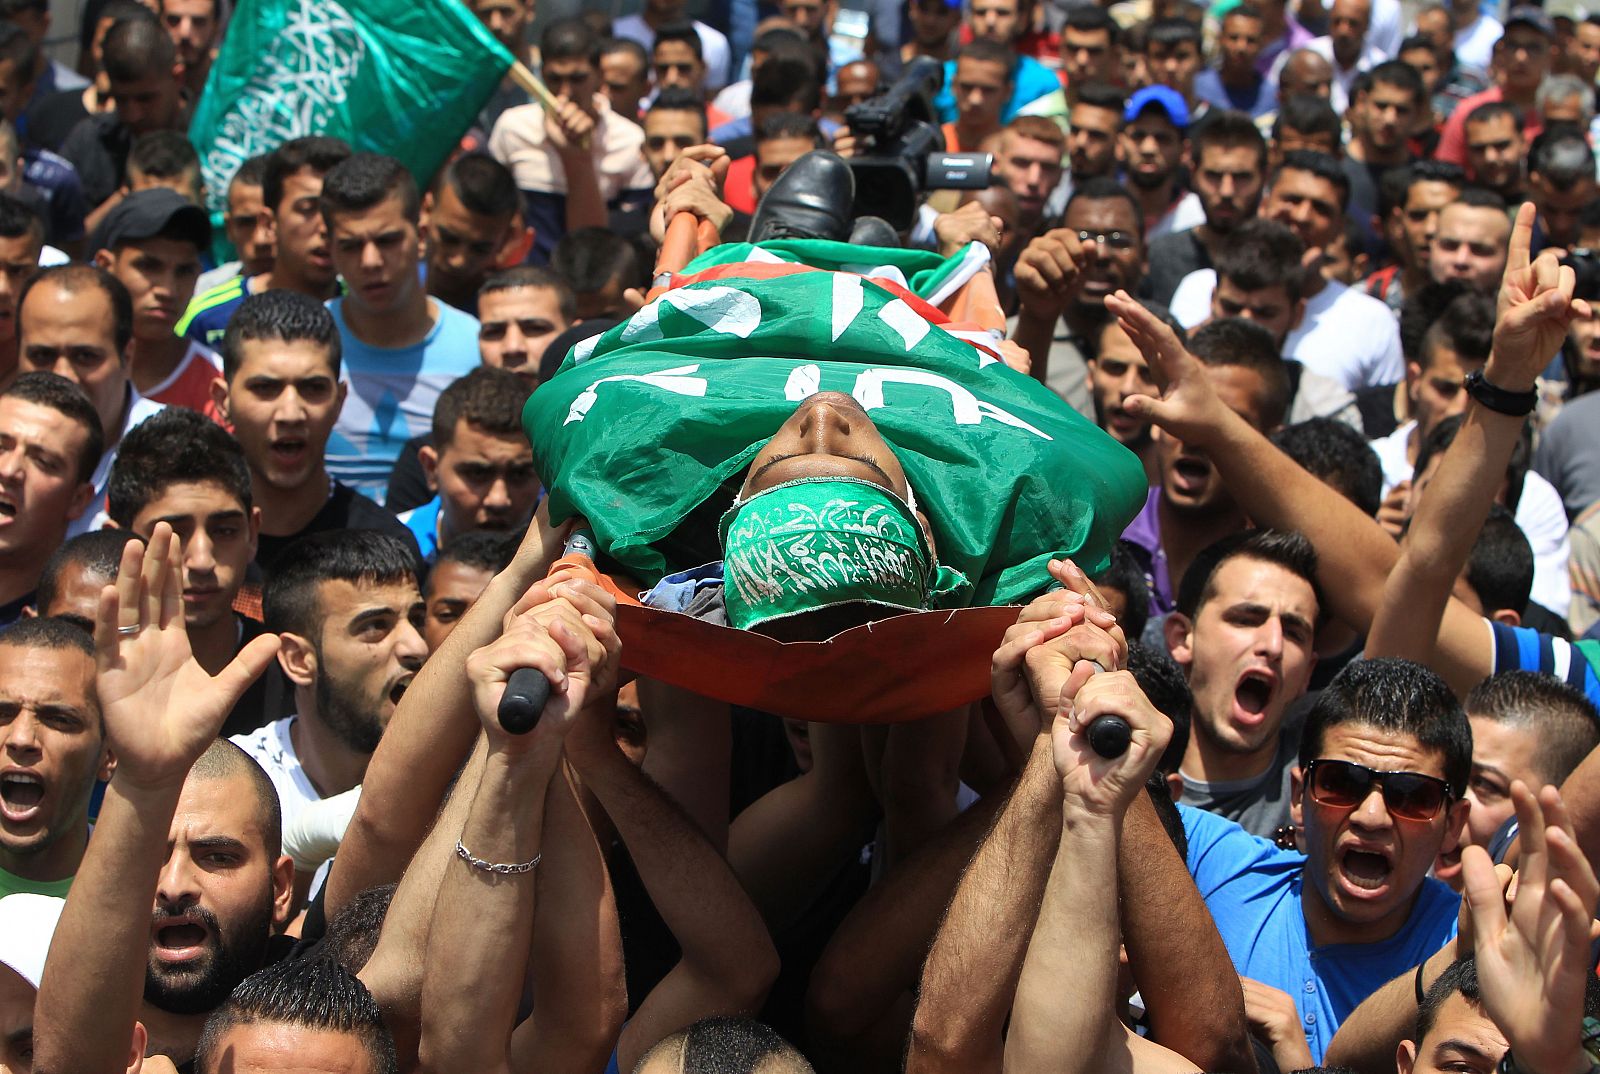 El cuerpo de Ezzedine Ghora, de 23 años, envuelto en la bandera de Hamás, en Jenin, Palestina